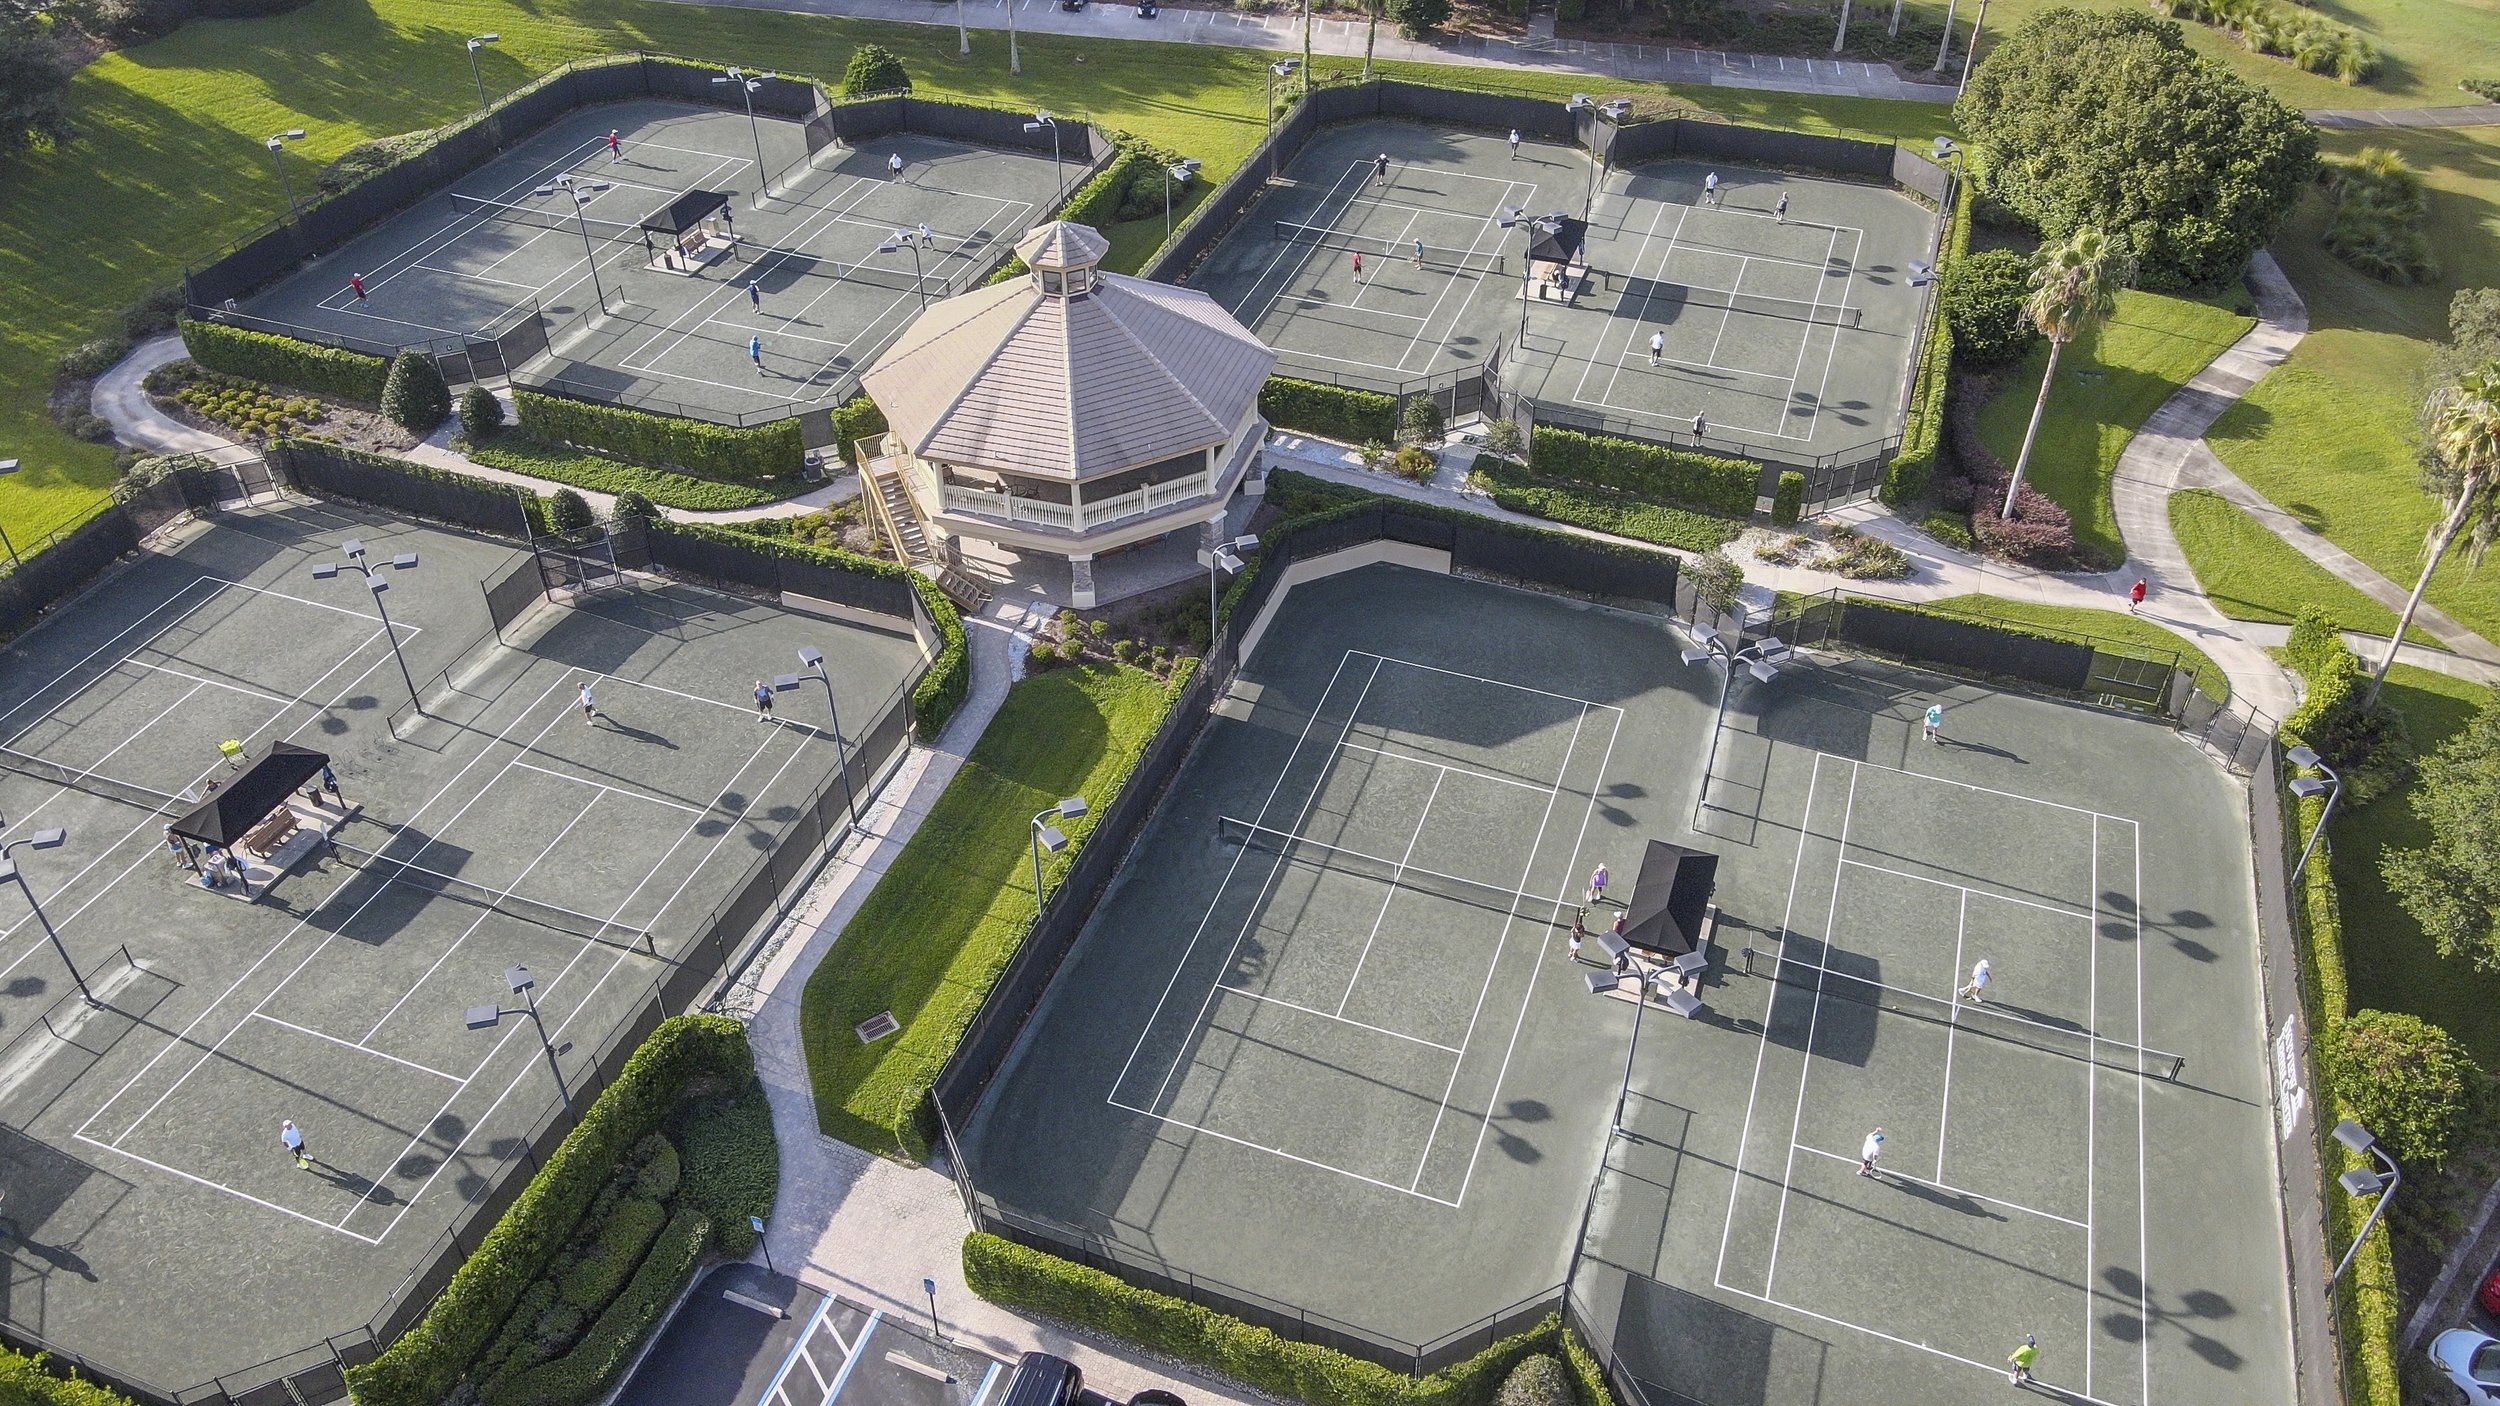 Tennis Stills from Drone-02.jpg